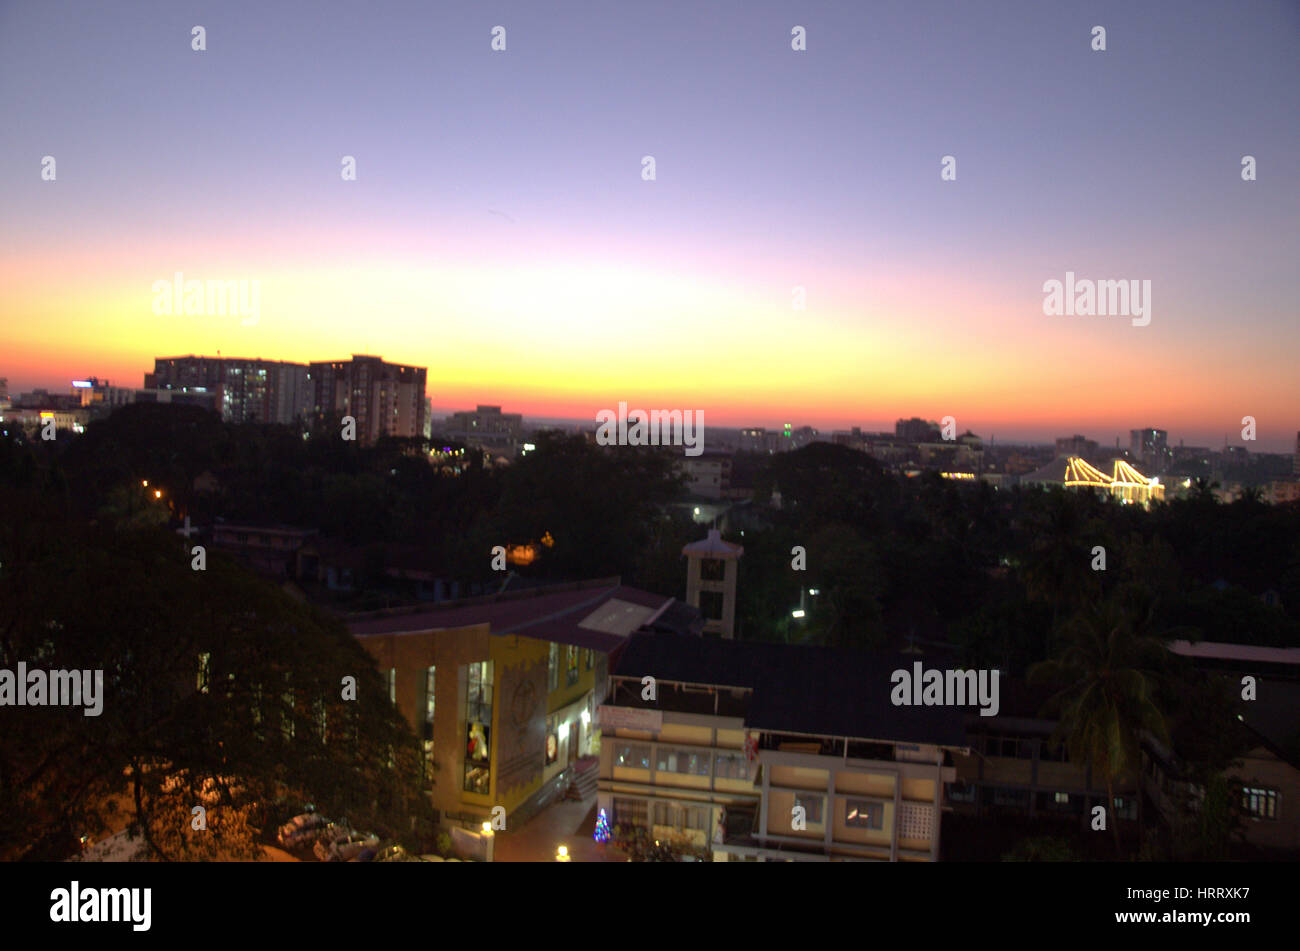 Mangalore skyline at sunset Stock Photo